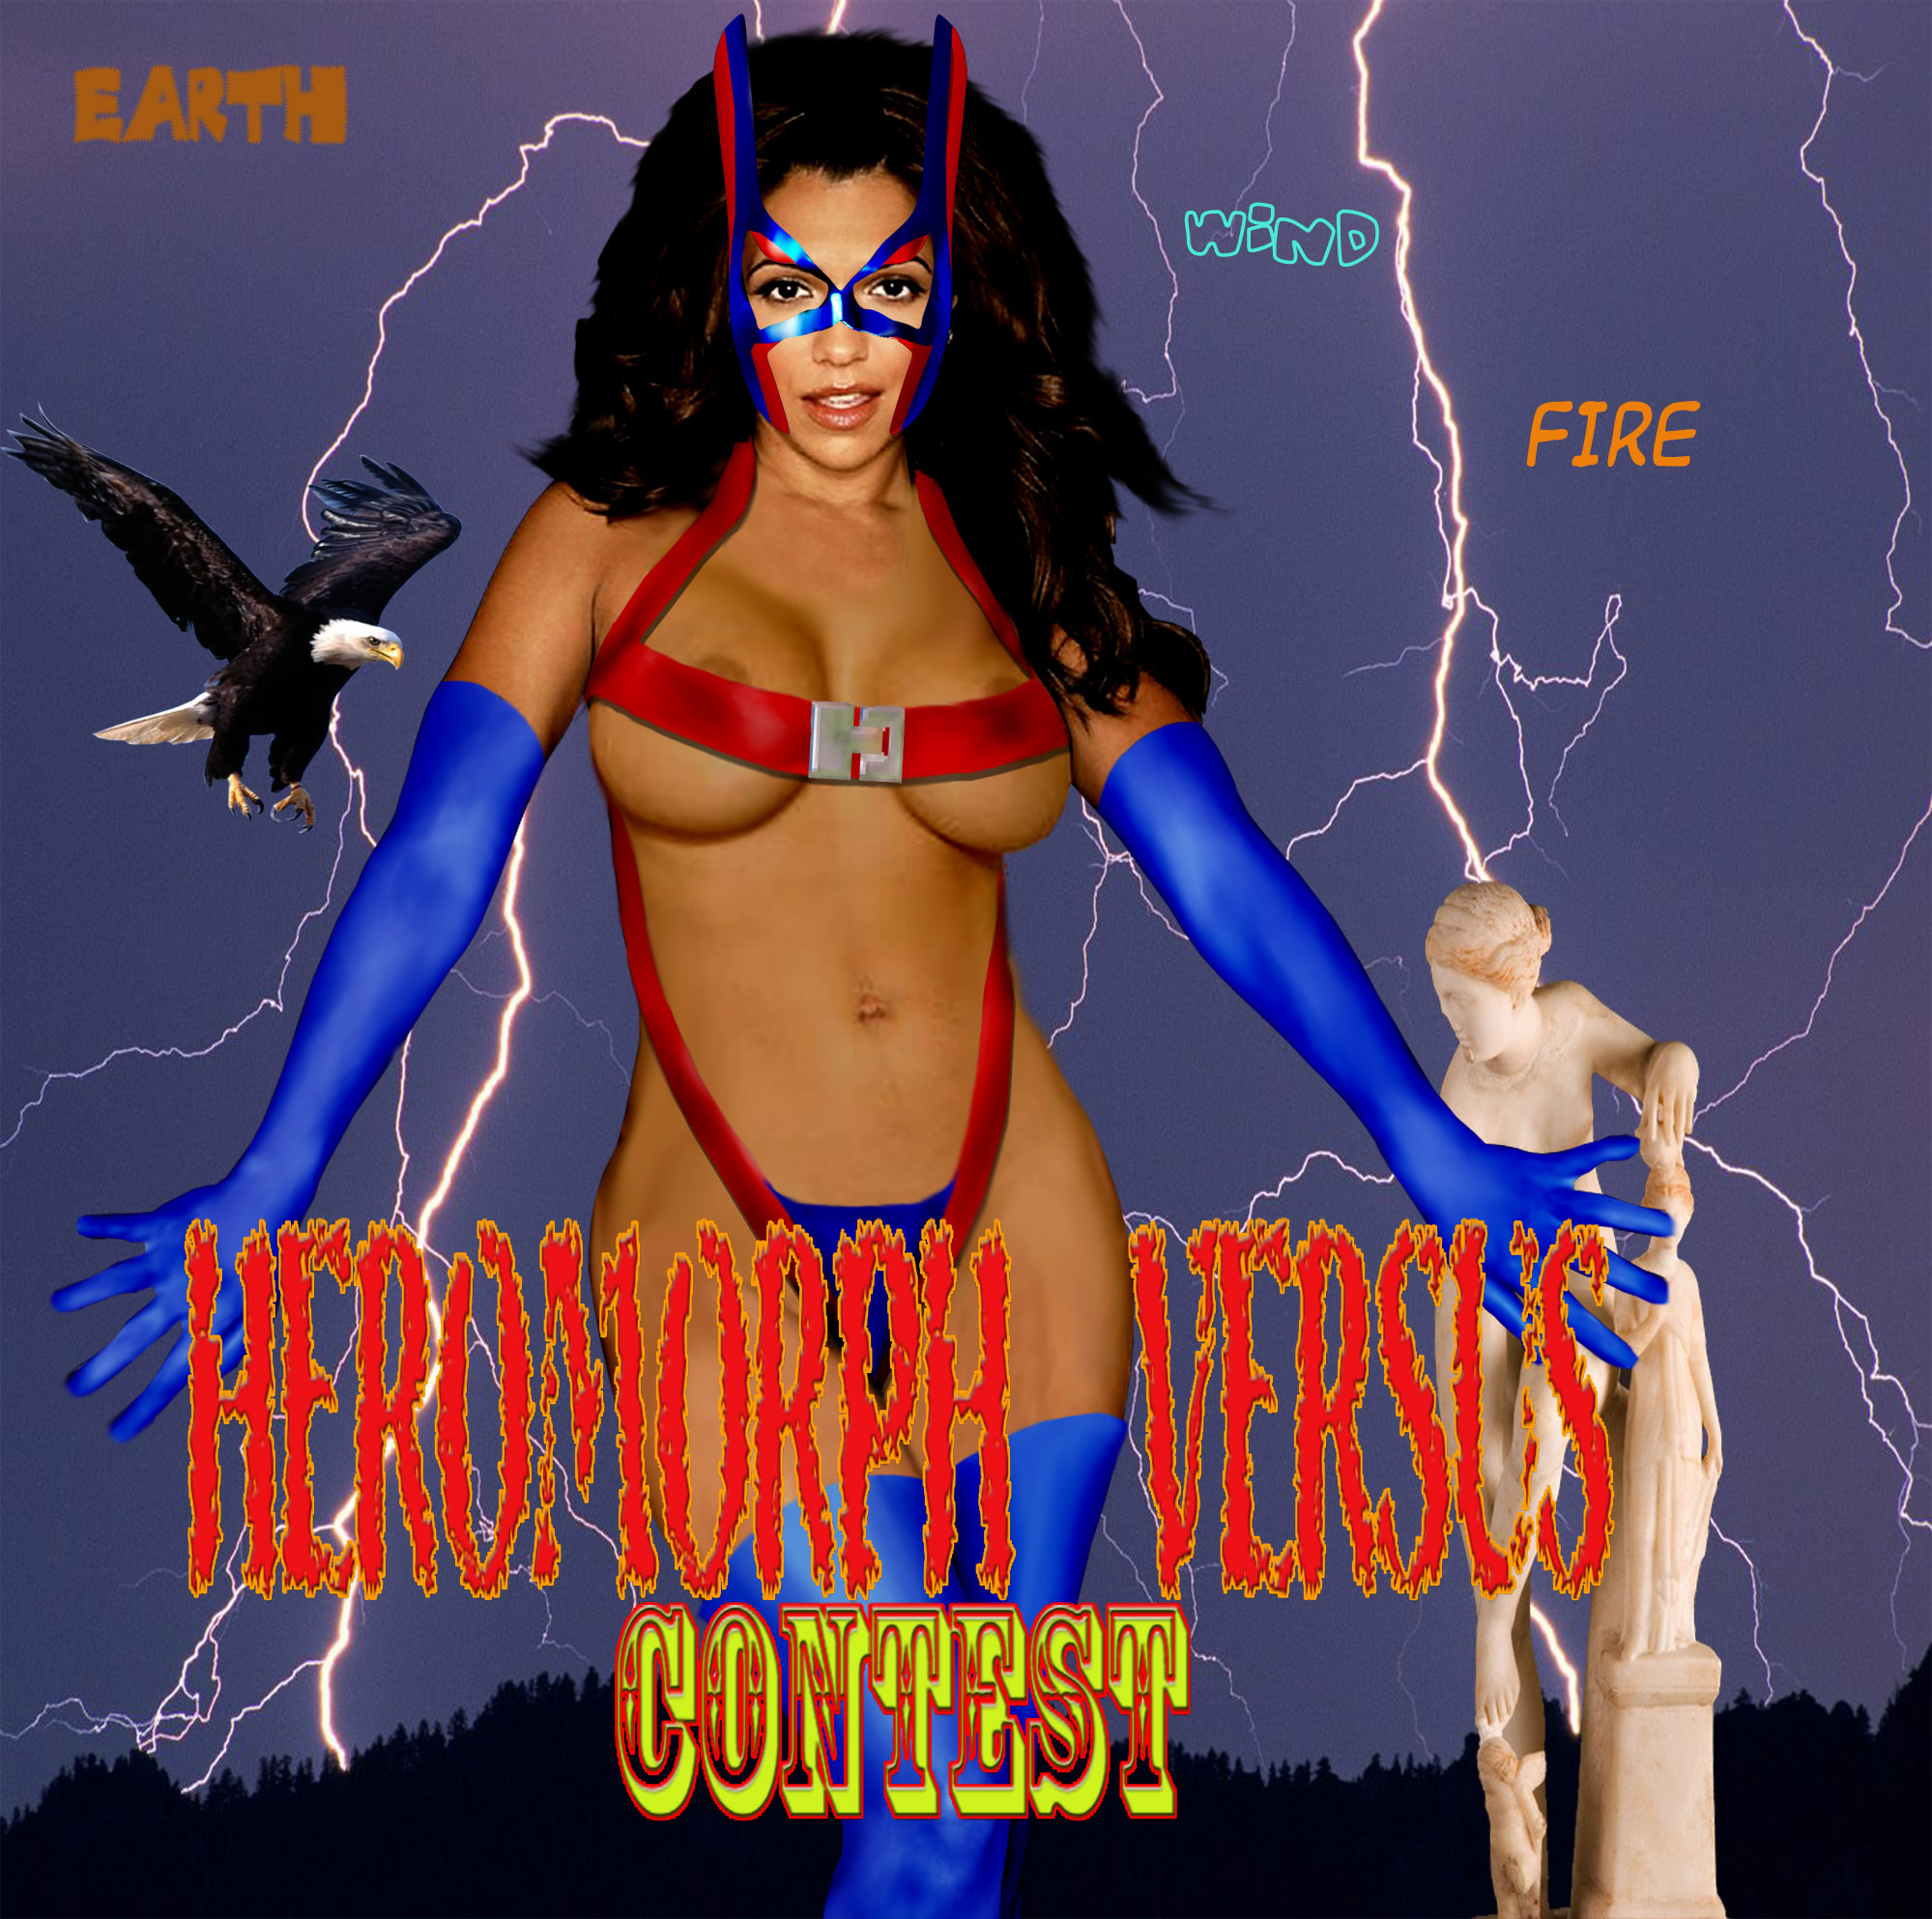 Heromorph Versus image example